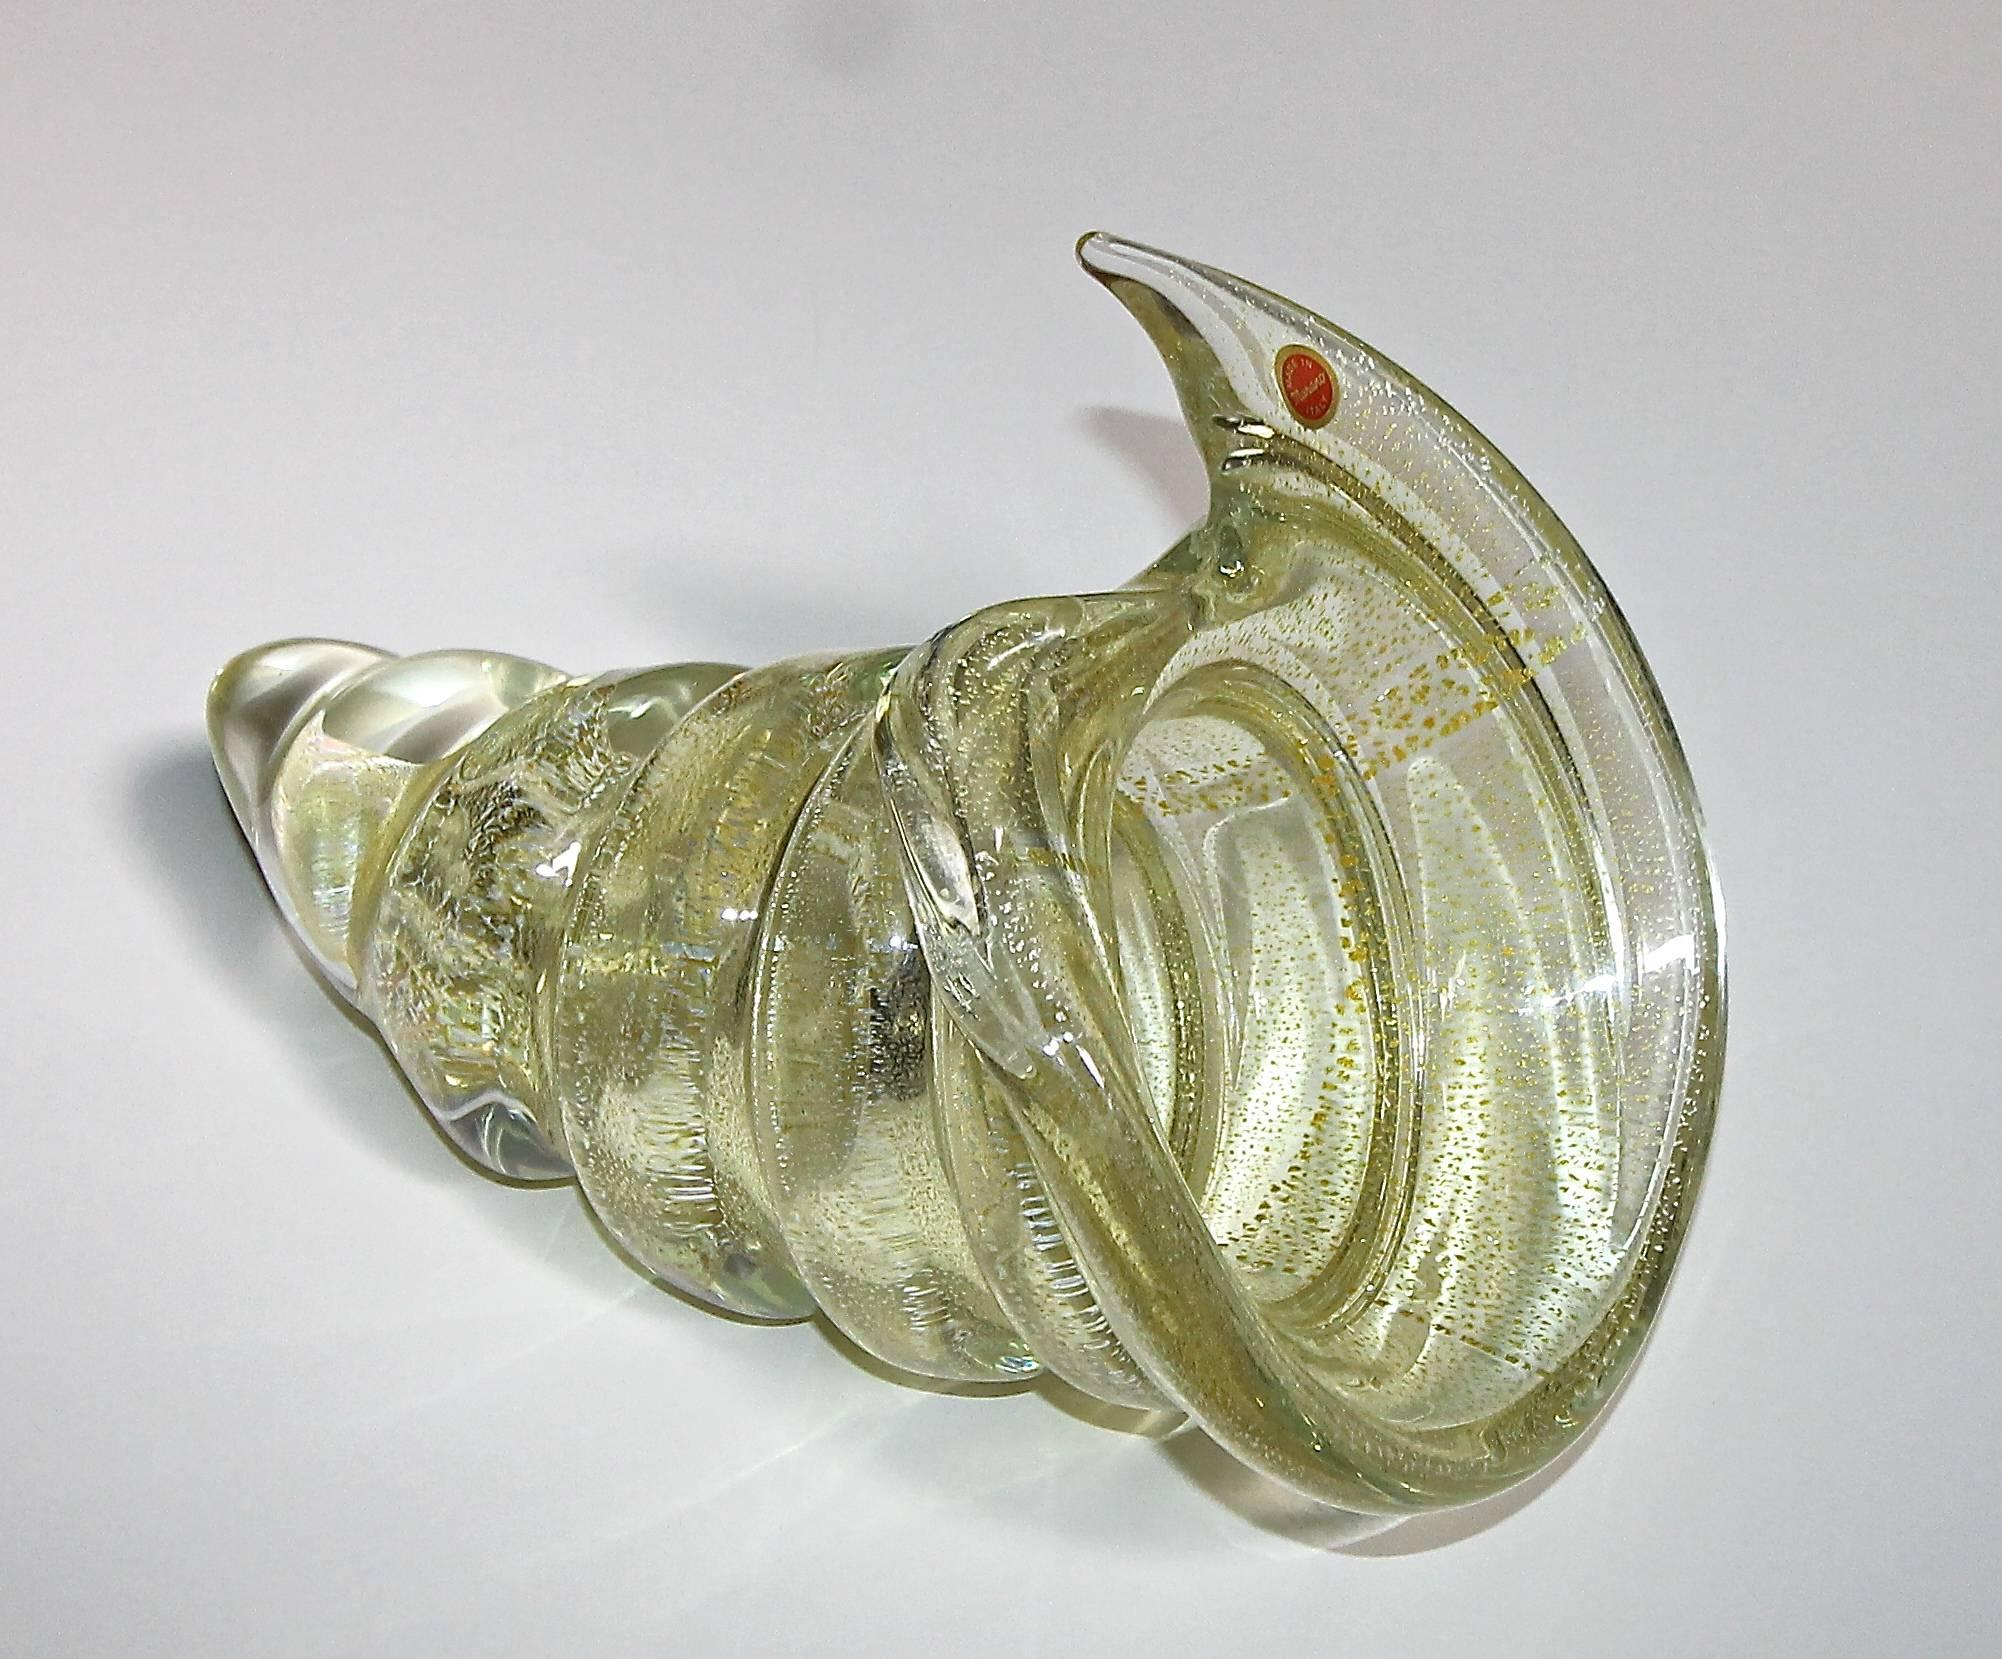 Seltene und monumentale, muschelförmige Murano-Glasschale. Das dicke, mundgeblasene Glas hat einen Goldguss und ist innen mit Blattsilber gesprenkelt. Eine extrem große und schwere Schale mit einem Gewicht von fast 14 Pfund. Behält den originalen